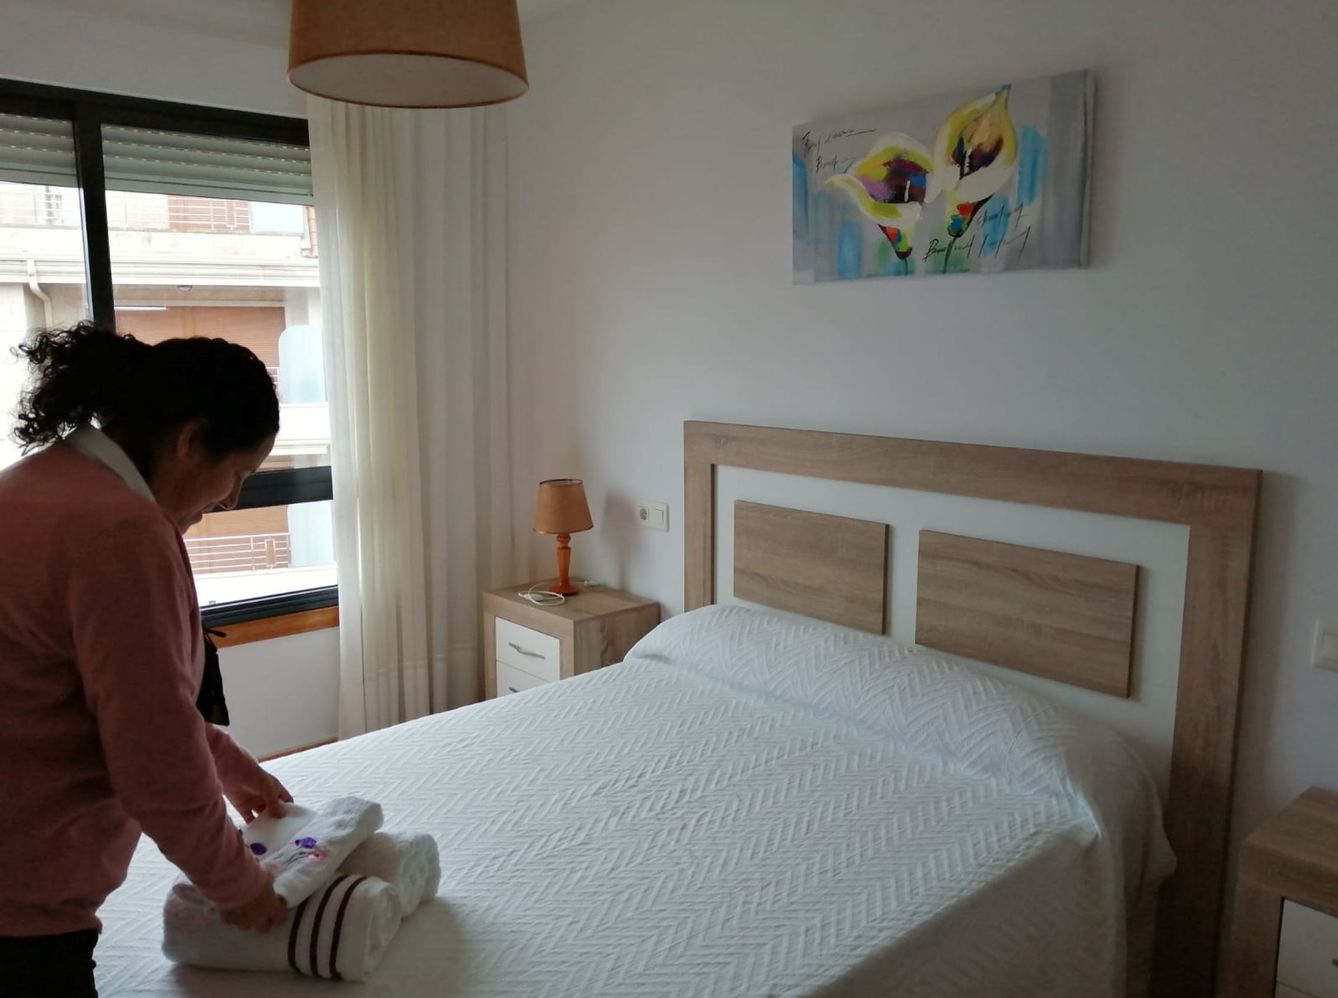 La empleada de un apartamento turístico en Sanxenxo prepara una estancia. (Reuters)